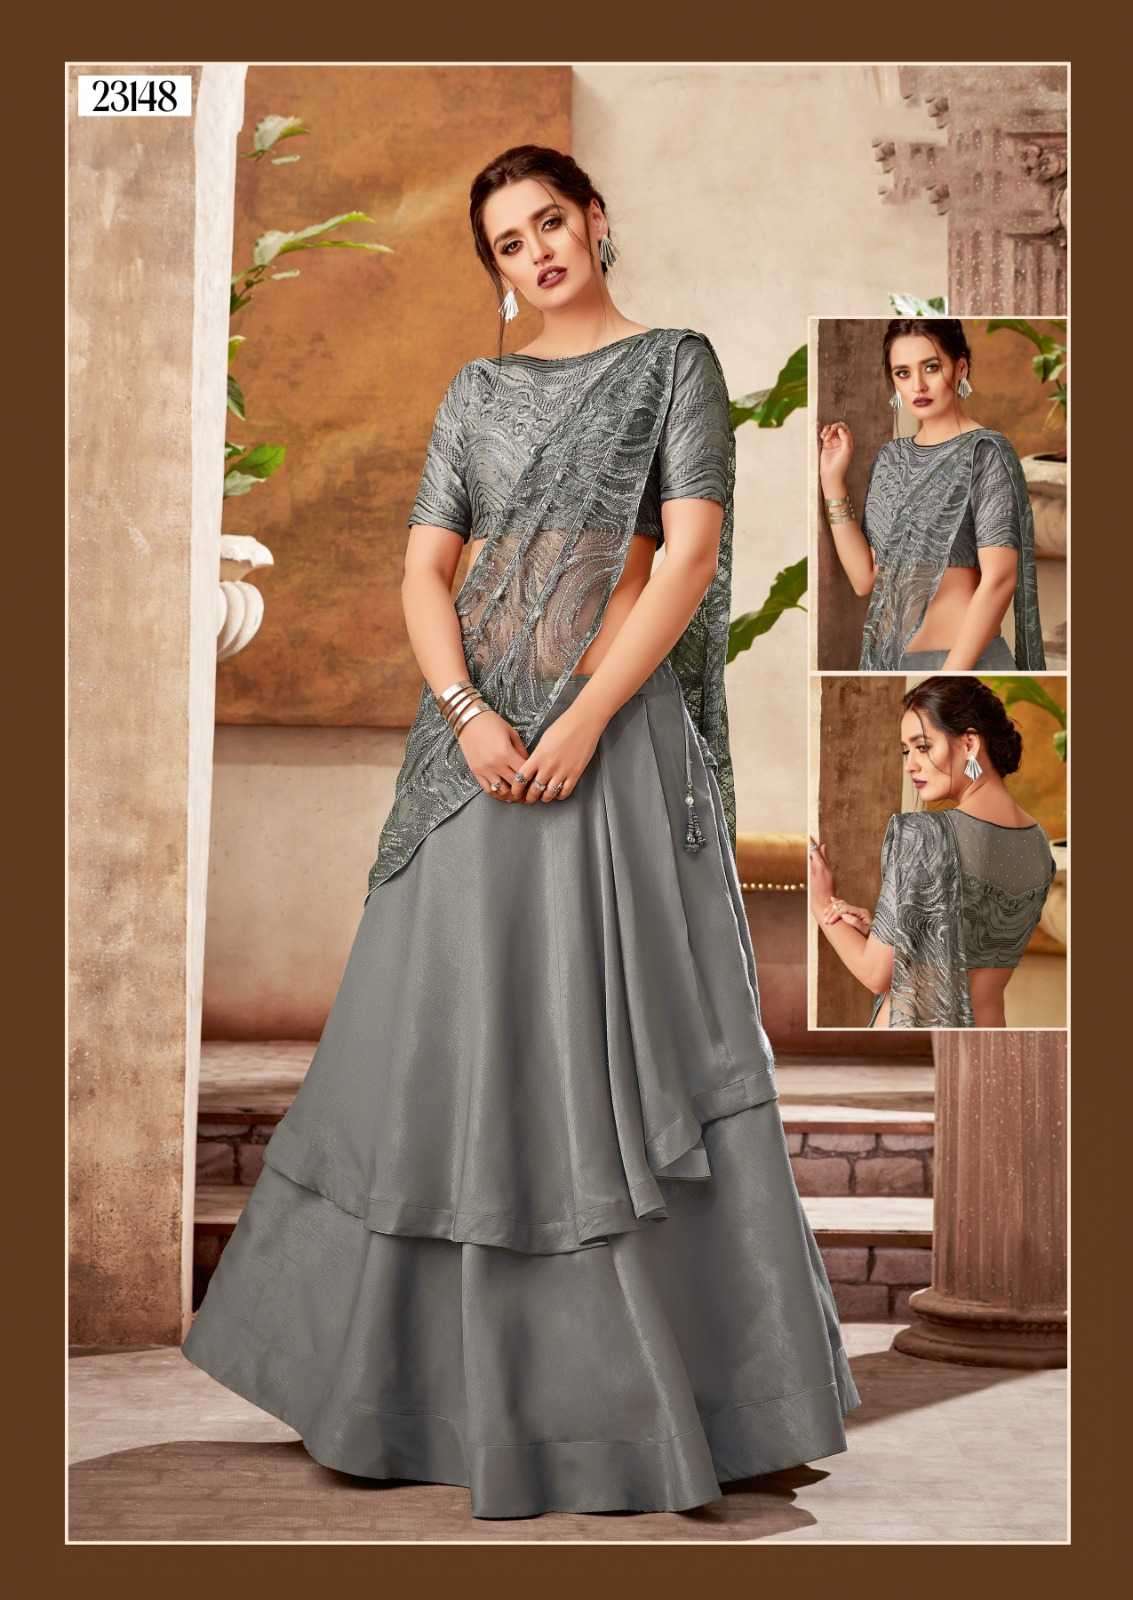 Wear Indian Bridal Lehenga Choli Lehnga Choli Bollywood Designer Dress  Party | eBay